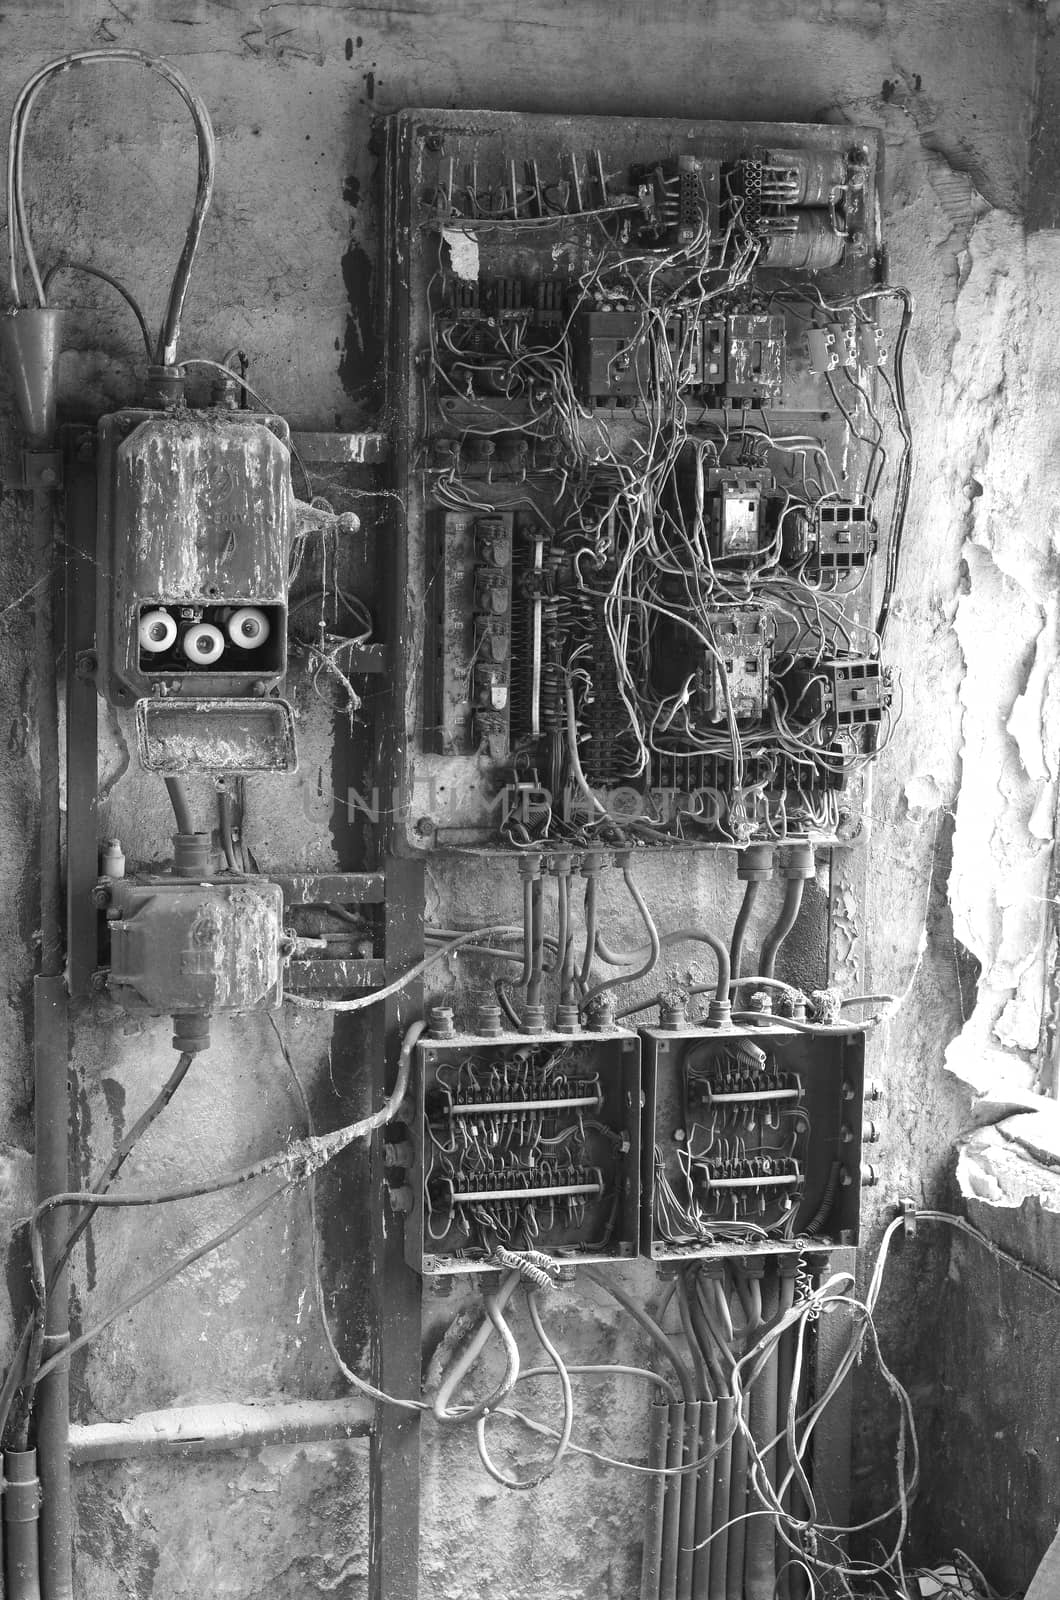 Old rusty eletrical box